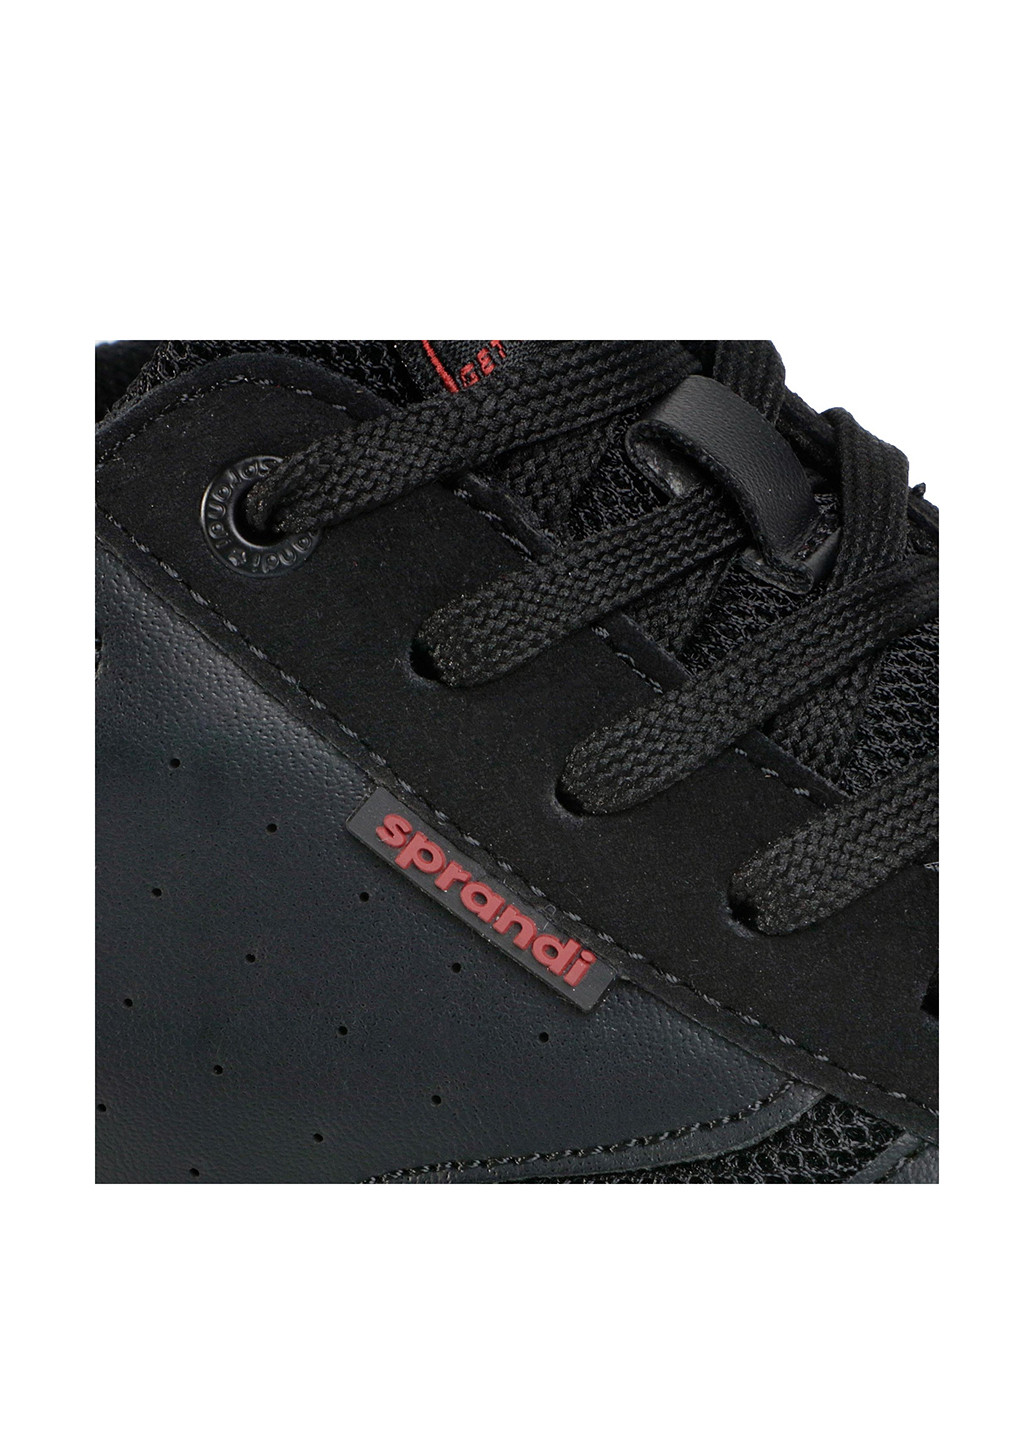 Черные демисезонные кросівки mp07-91235-01 Sprandi